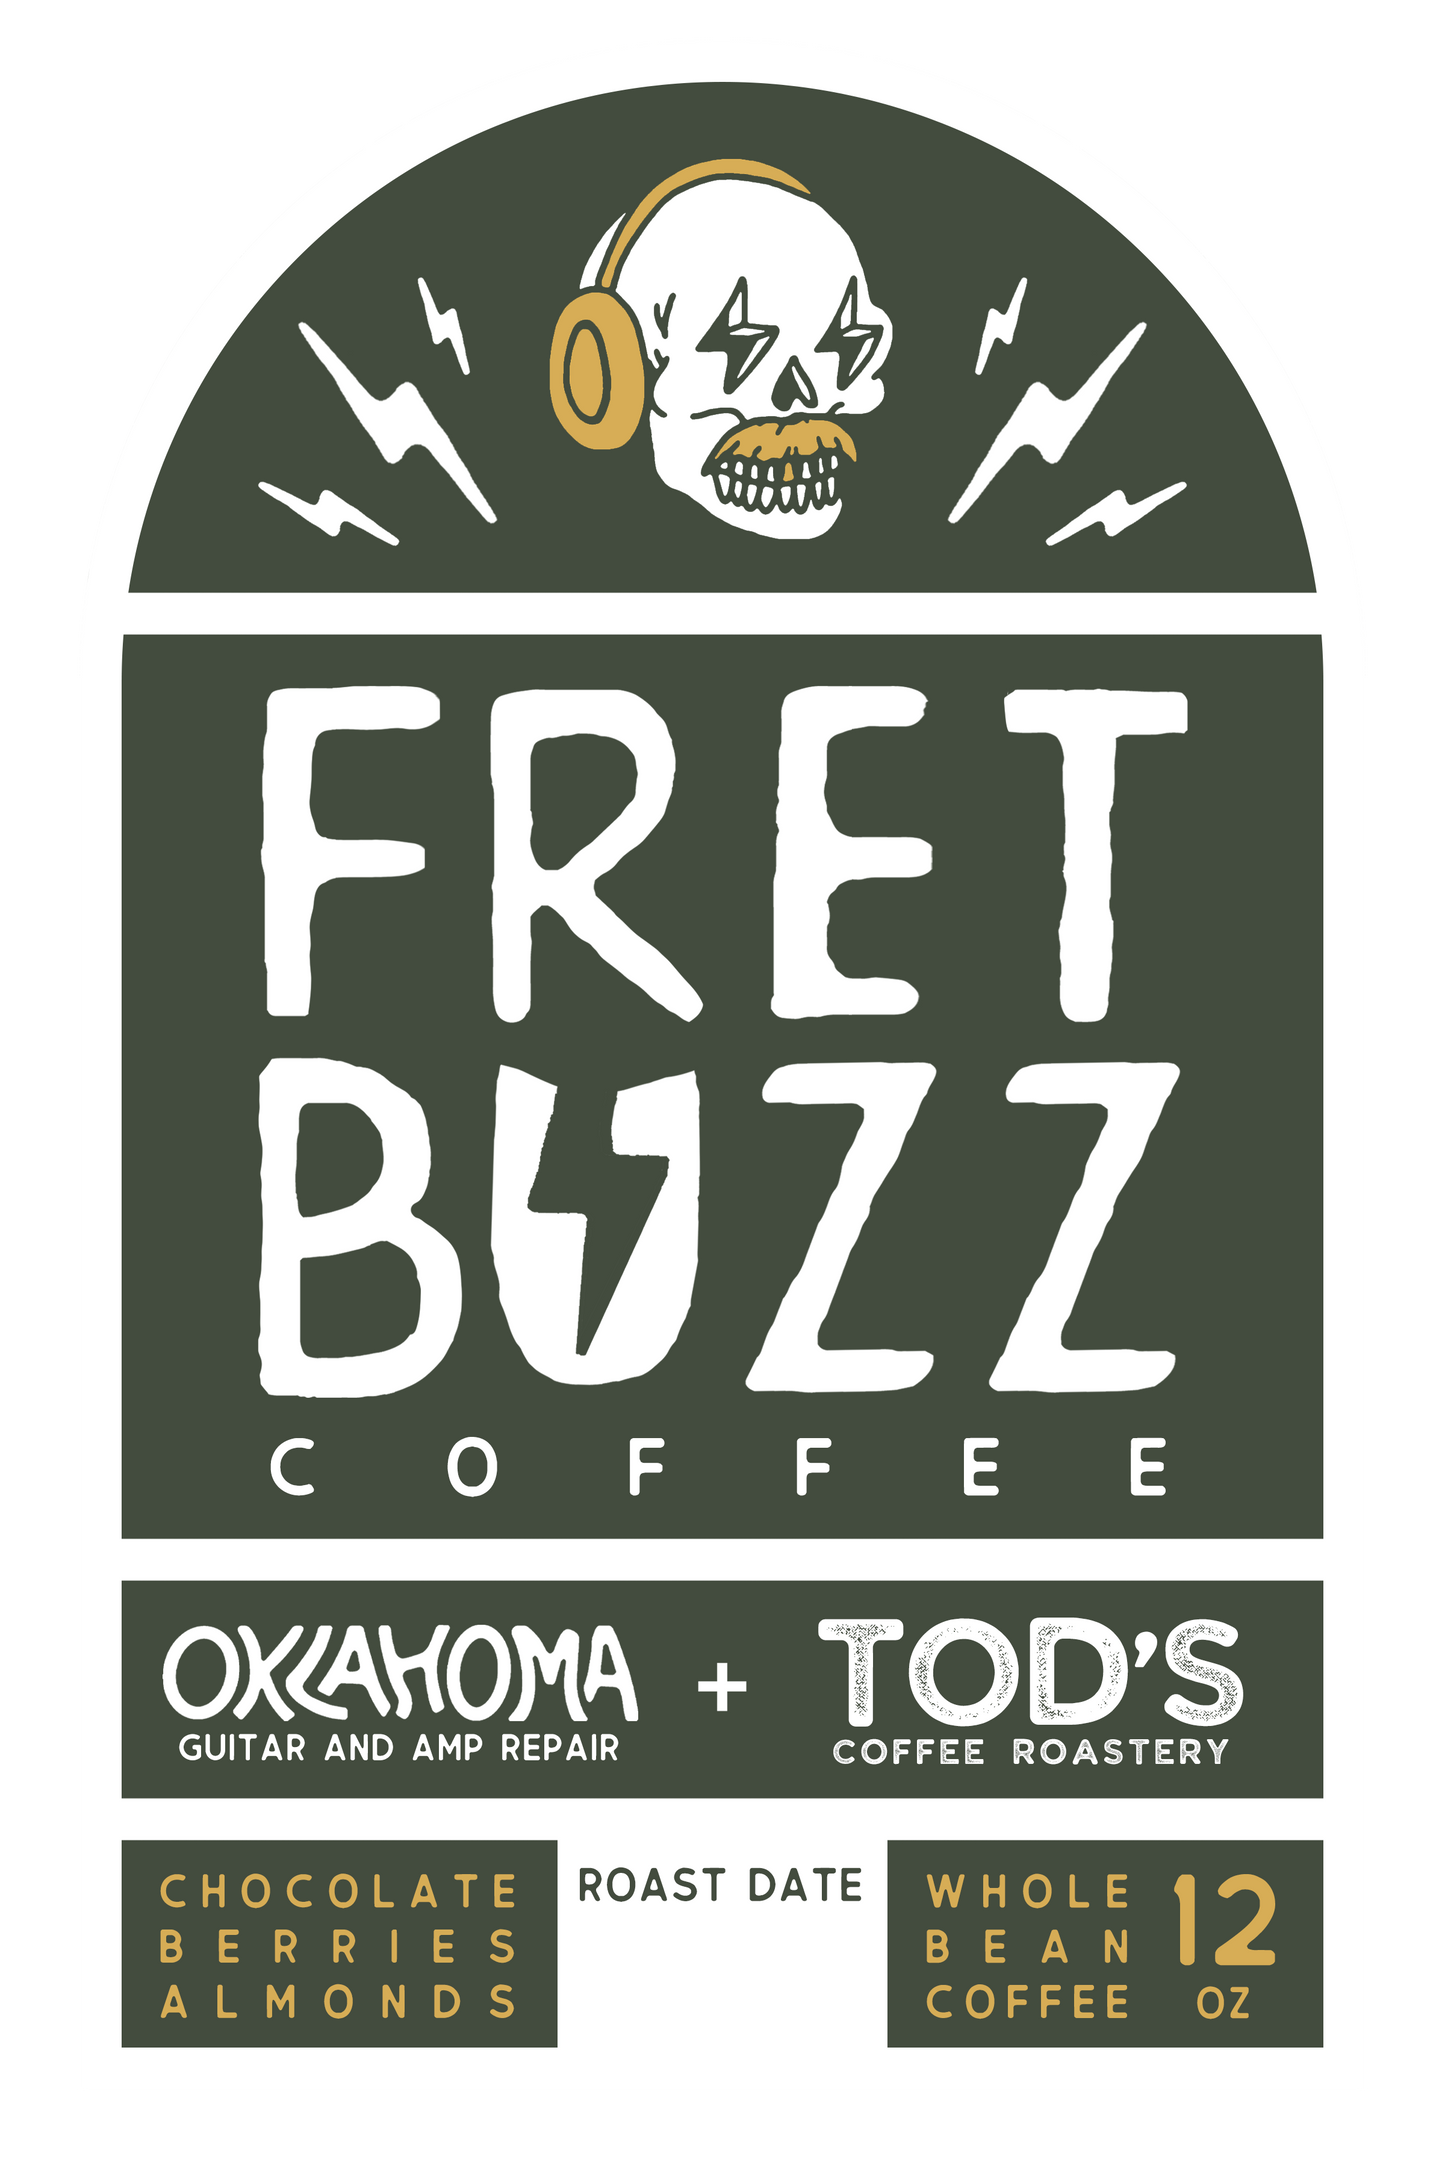 OKGAR X Tod's Coffee Roastery - Fret Buzz Coffee Blend (COMING SOON)